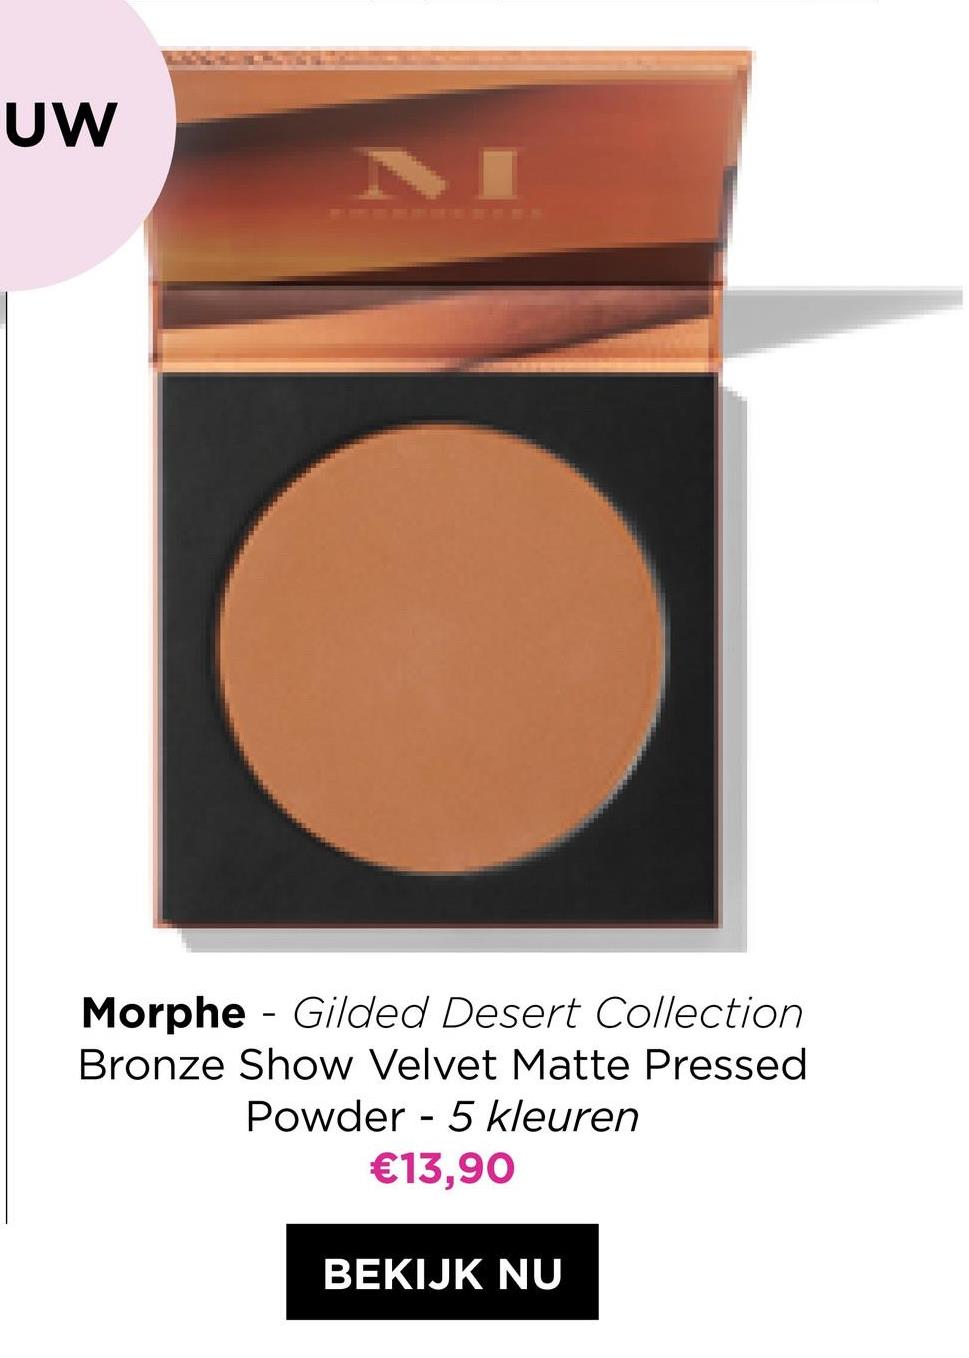 uw
-
Morphe - Gilded Desert Collection
Bronze Show Velvet Matte Pressed
Powder - 5 kleuren
€13,90
BEKIJK NU
